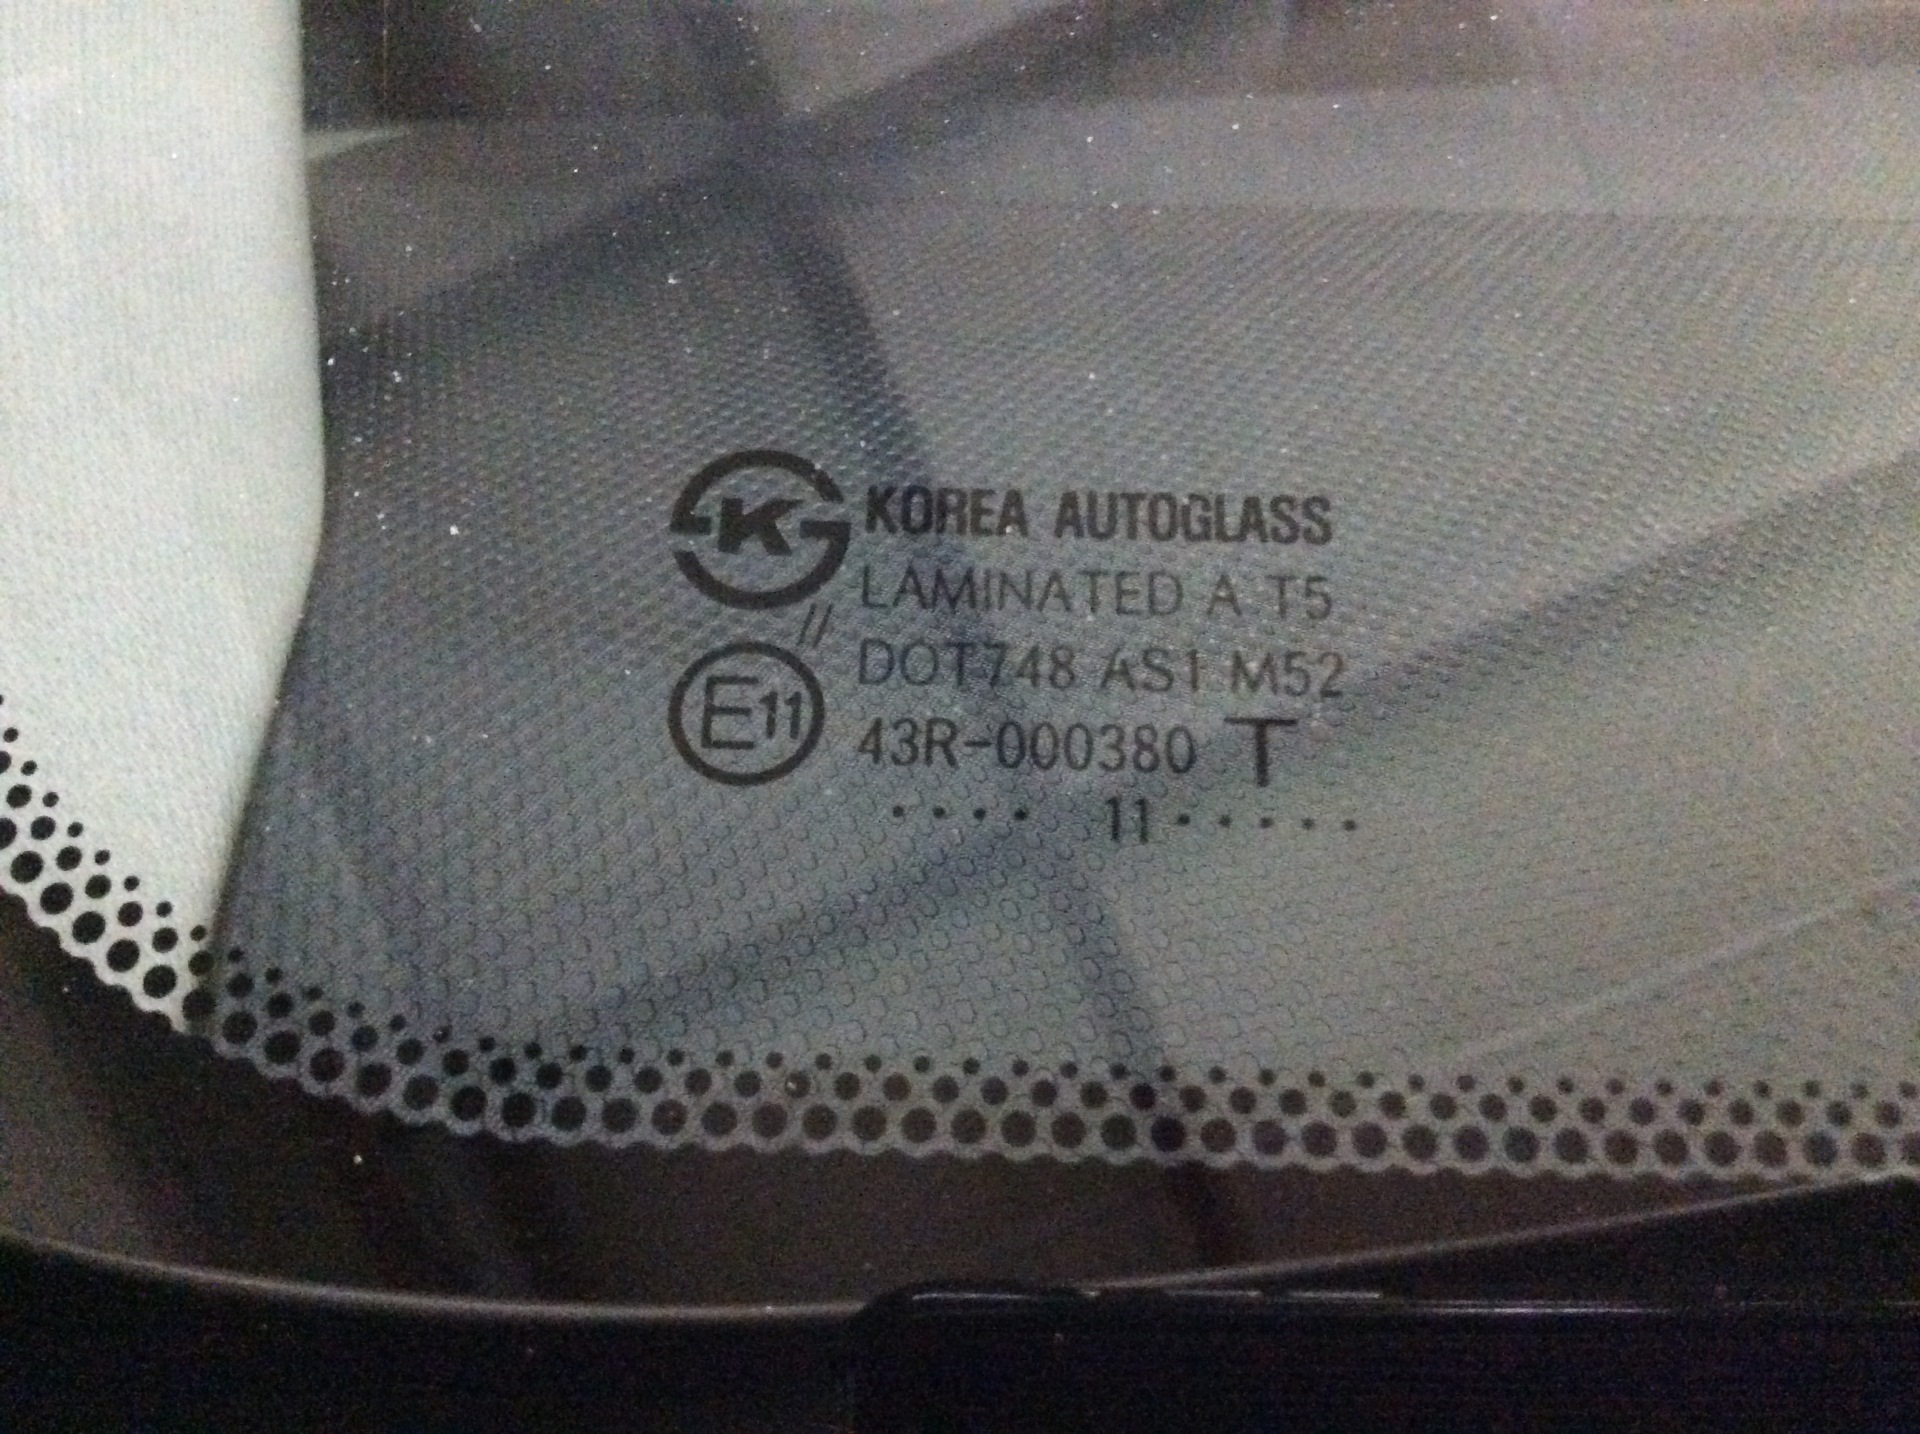 Оригинал лобовое стекло солярис. Лобовое стекло Hyundai Solaris оригинал маркировка. Ветровое стекло Hyundai Solaris 2013 маркировка неоригинального. Стекло лобовое КМК VW t5. Маркировка лобового стекла Солярис 2.